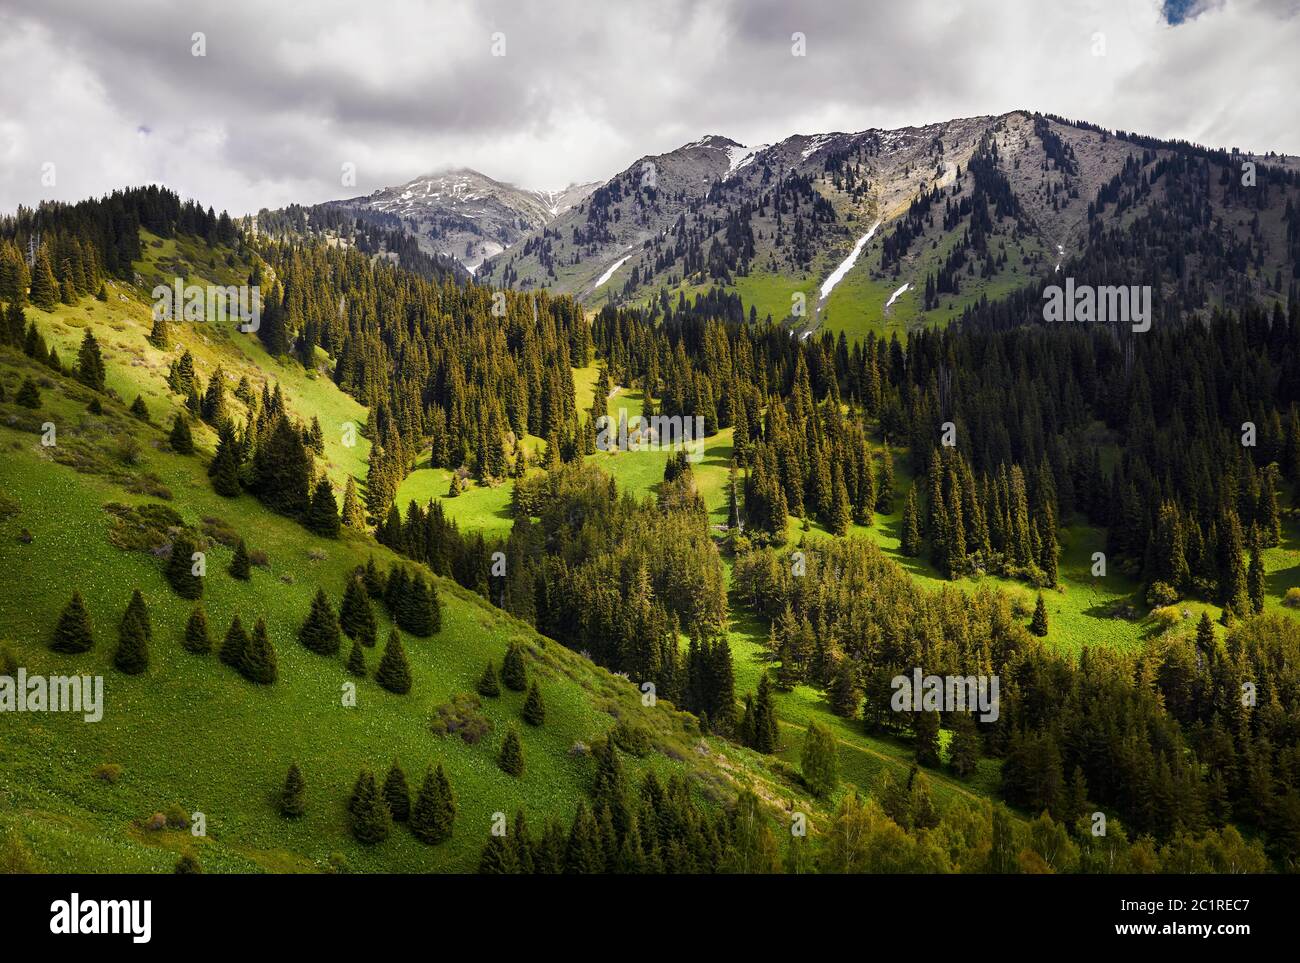 Schöne idyllische Landschaft von Kiefernwald im Bergtal bei bewölktem sonnigen Tag Stockfoto